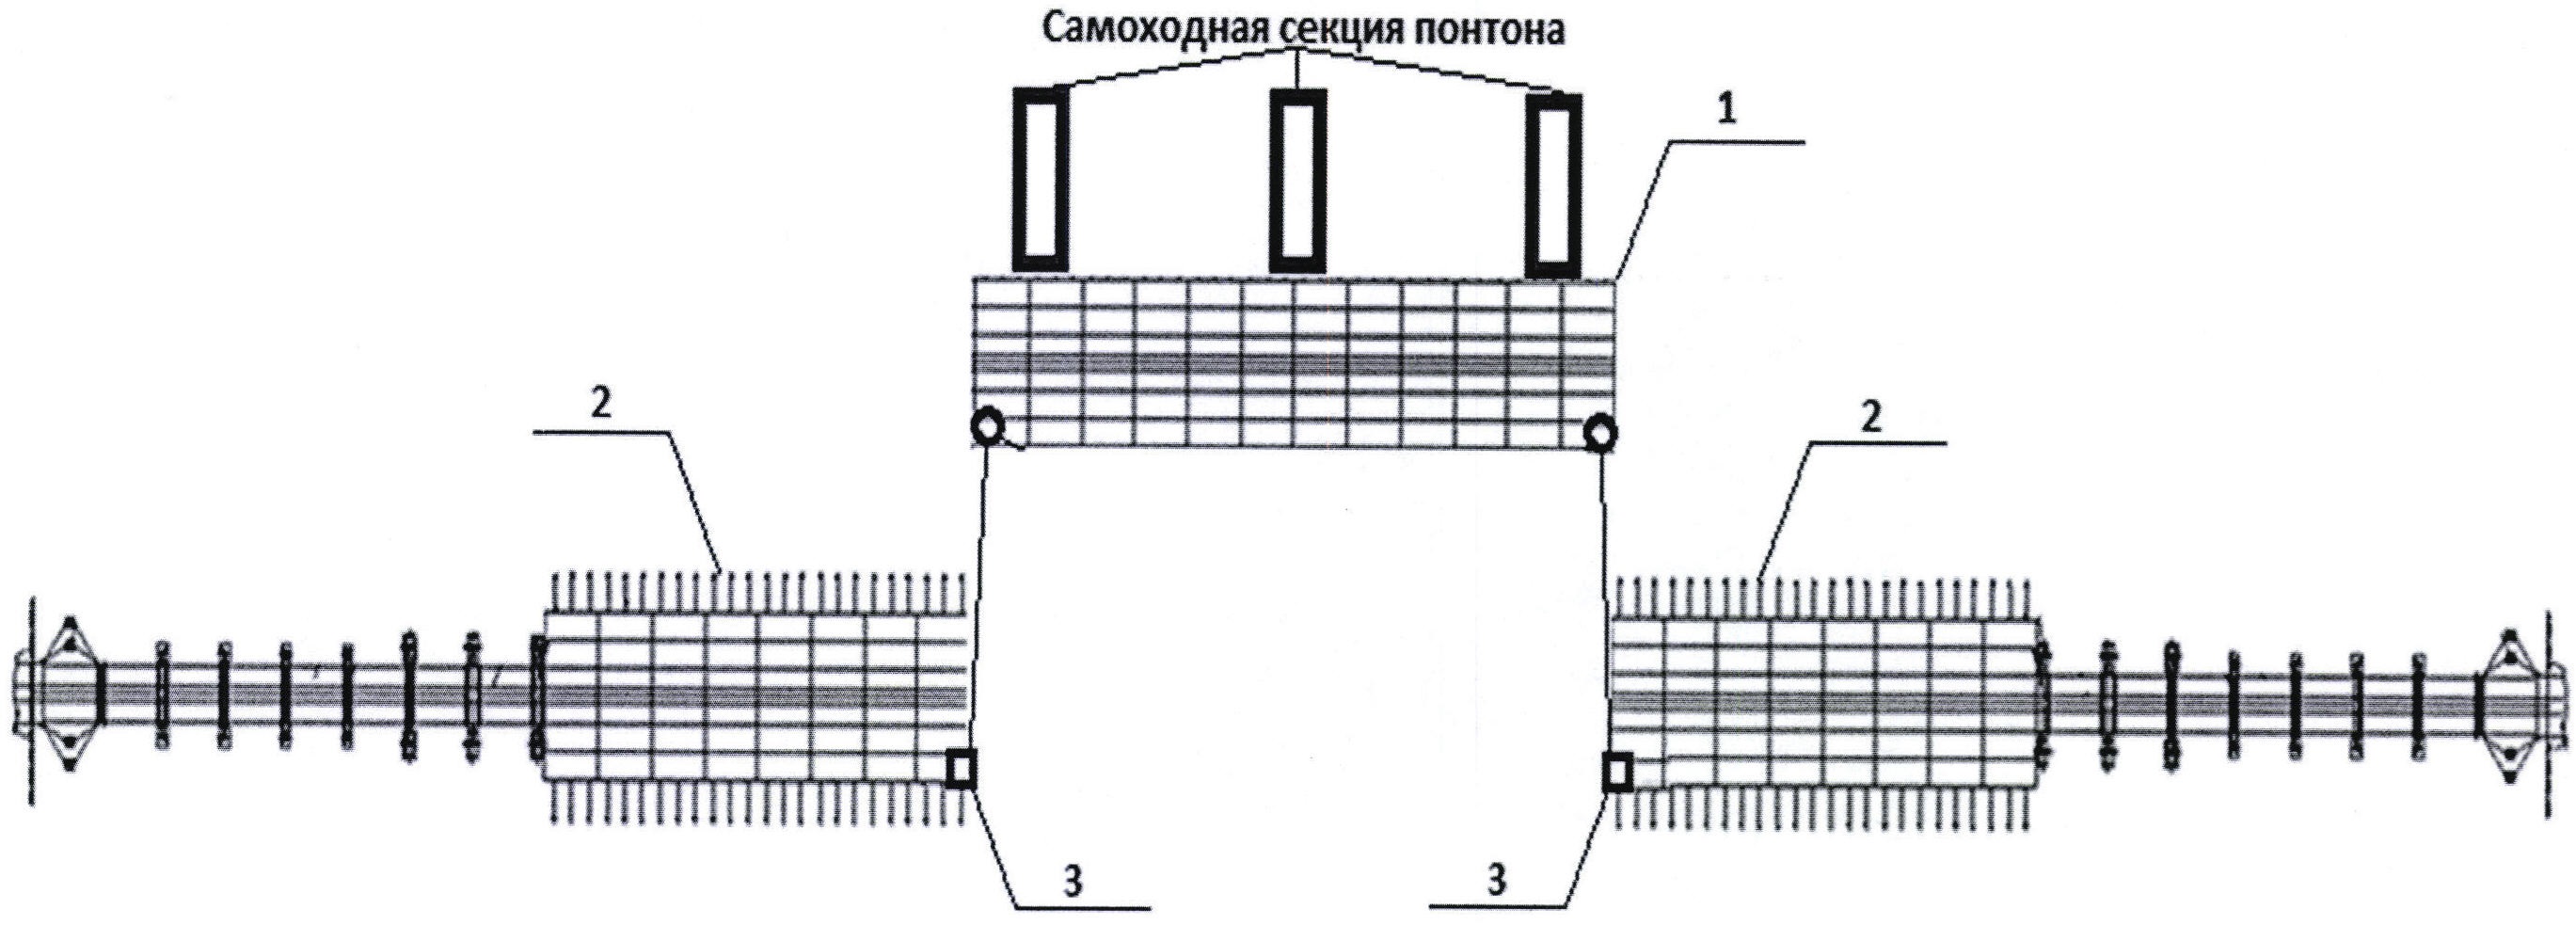 Способ установки выводного парома в линию моста из табельного имущества наплавного железнодорожного моста (НЖМ-56)